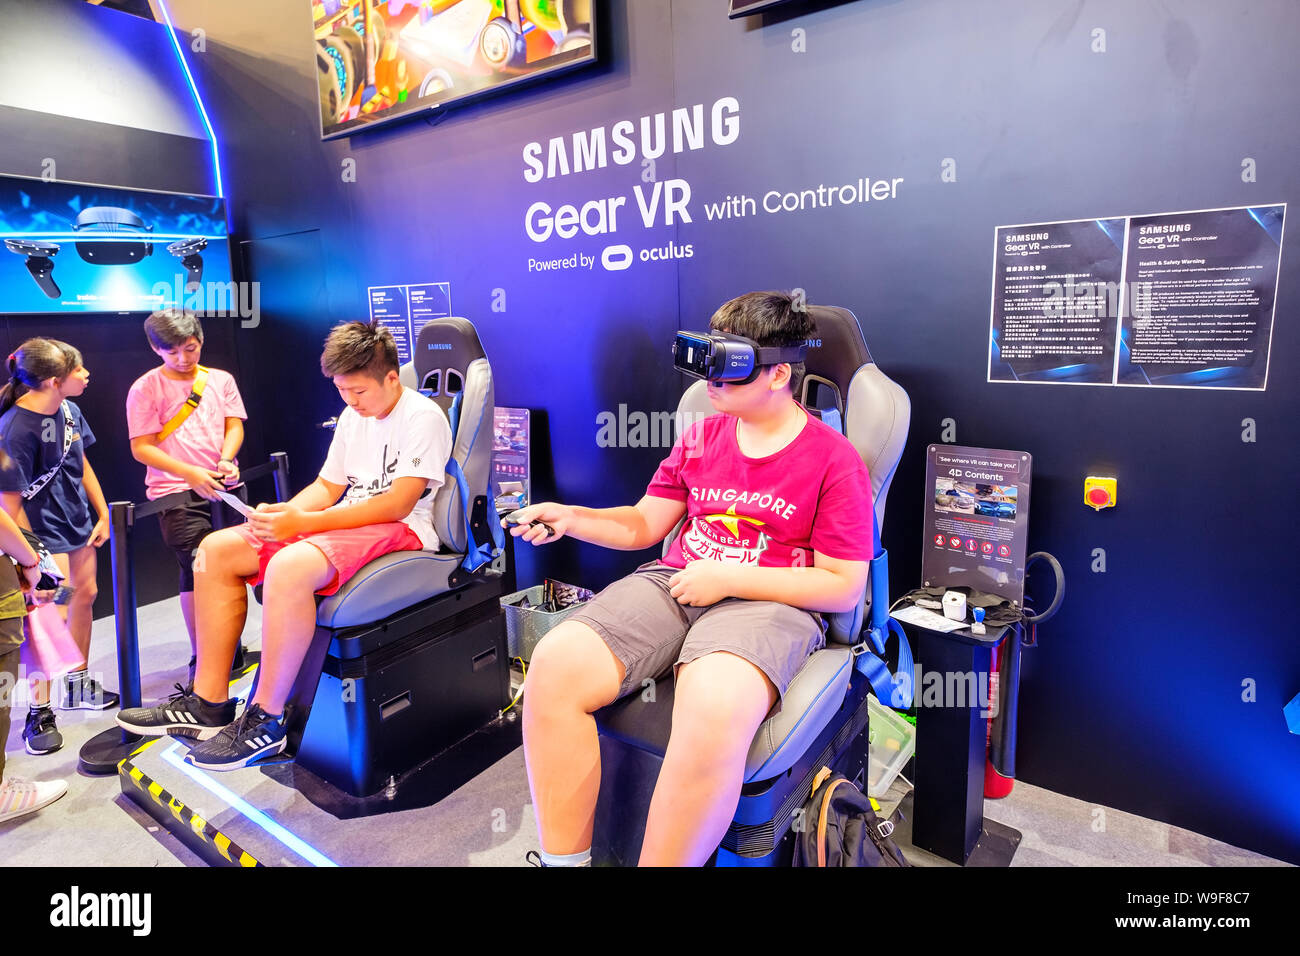 Los visitantes ven jugando un engranaje Samsung VR durante la Ani-Com & Games HK exposición evento en Hong Kong.ACGHK es la plataforma perfecta para las ventas y las oportunidades de negocios en la gran ola de industria creativa y desarrollo de entretenimiento digital. Como el carnaval de verano más populares en Hong Kong. Foto de stock